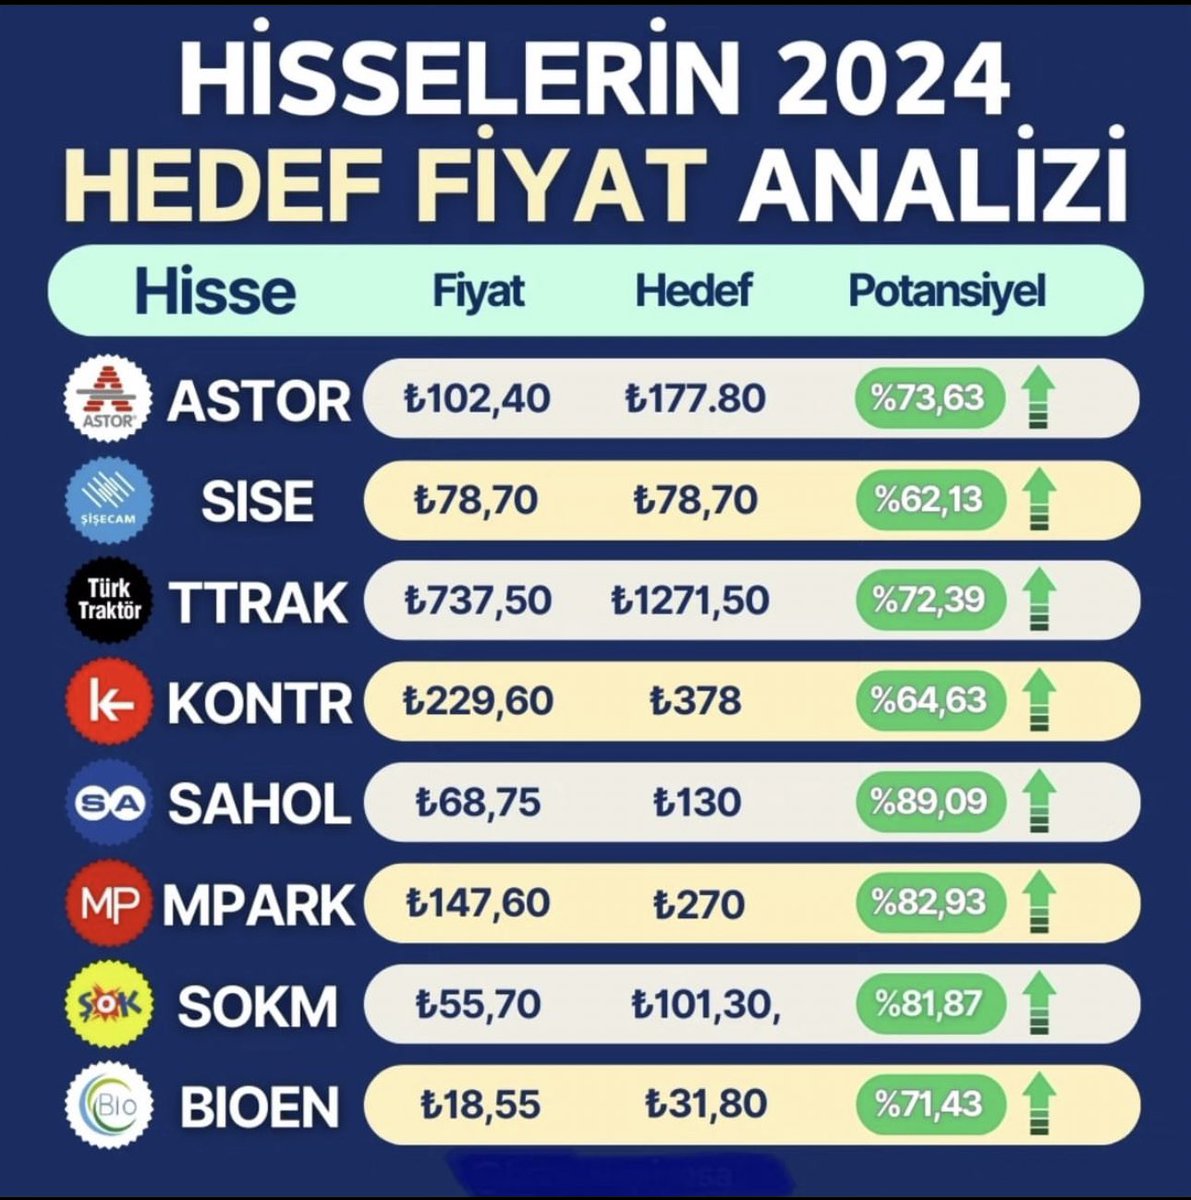 👇🏻Hisselerin 2024 yılı hedef fiyat analizi.

#astor

#sise 

#ttrak

#kontr

#sahol 

#mpark

#sokm

#bioen